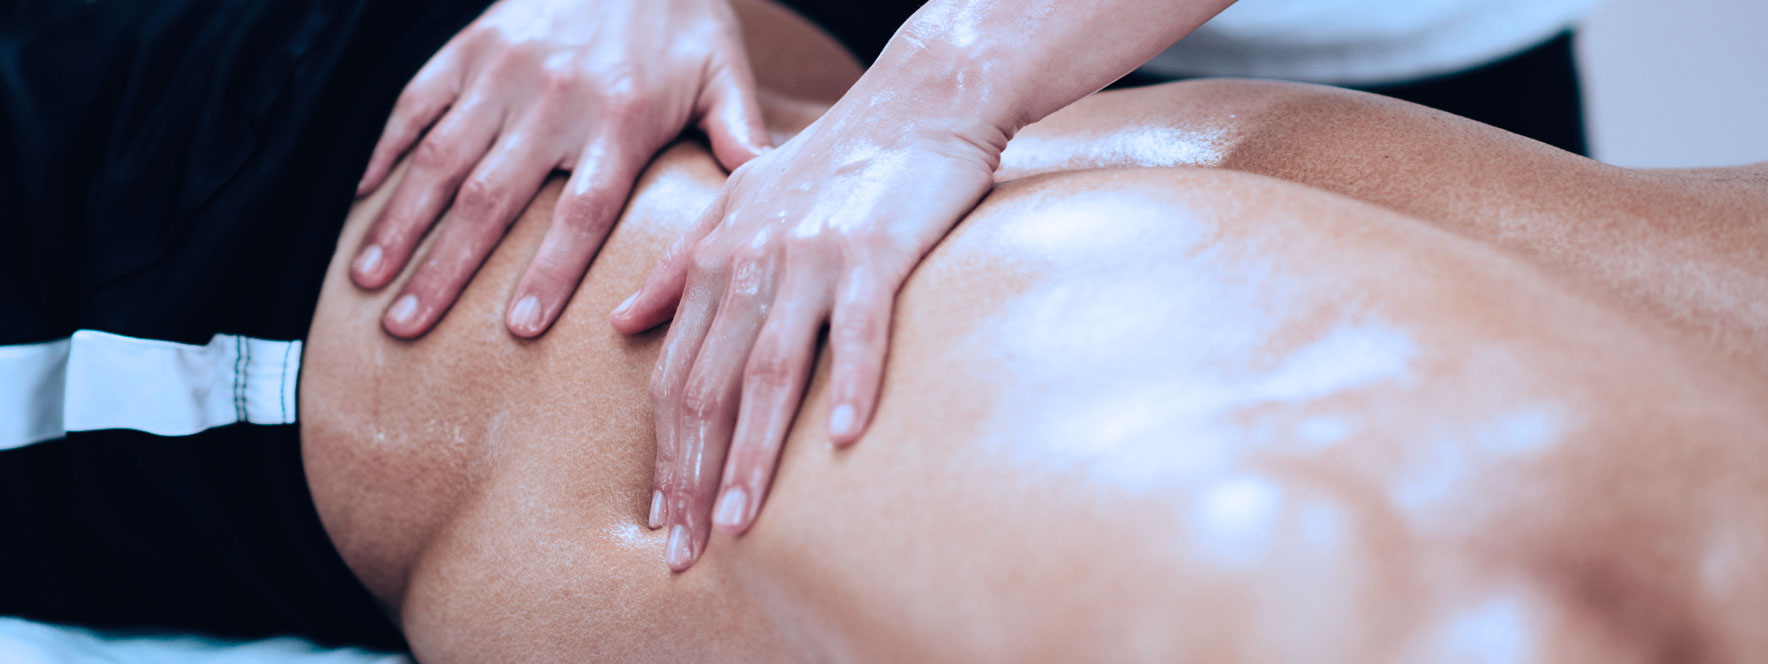 Homme reçoit un massage avant une activité physique augmentera la chaleur dans les muscles.